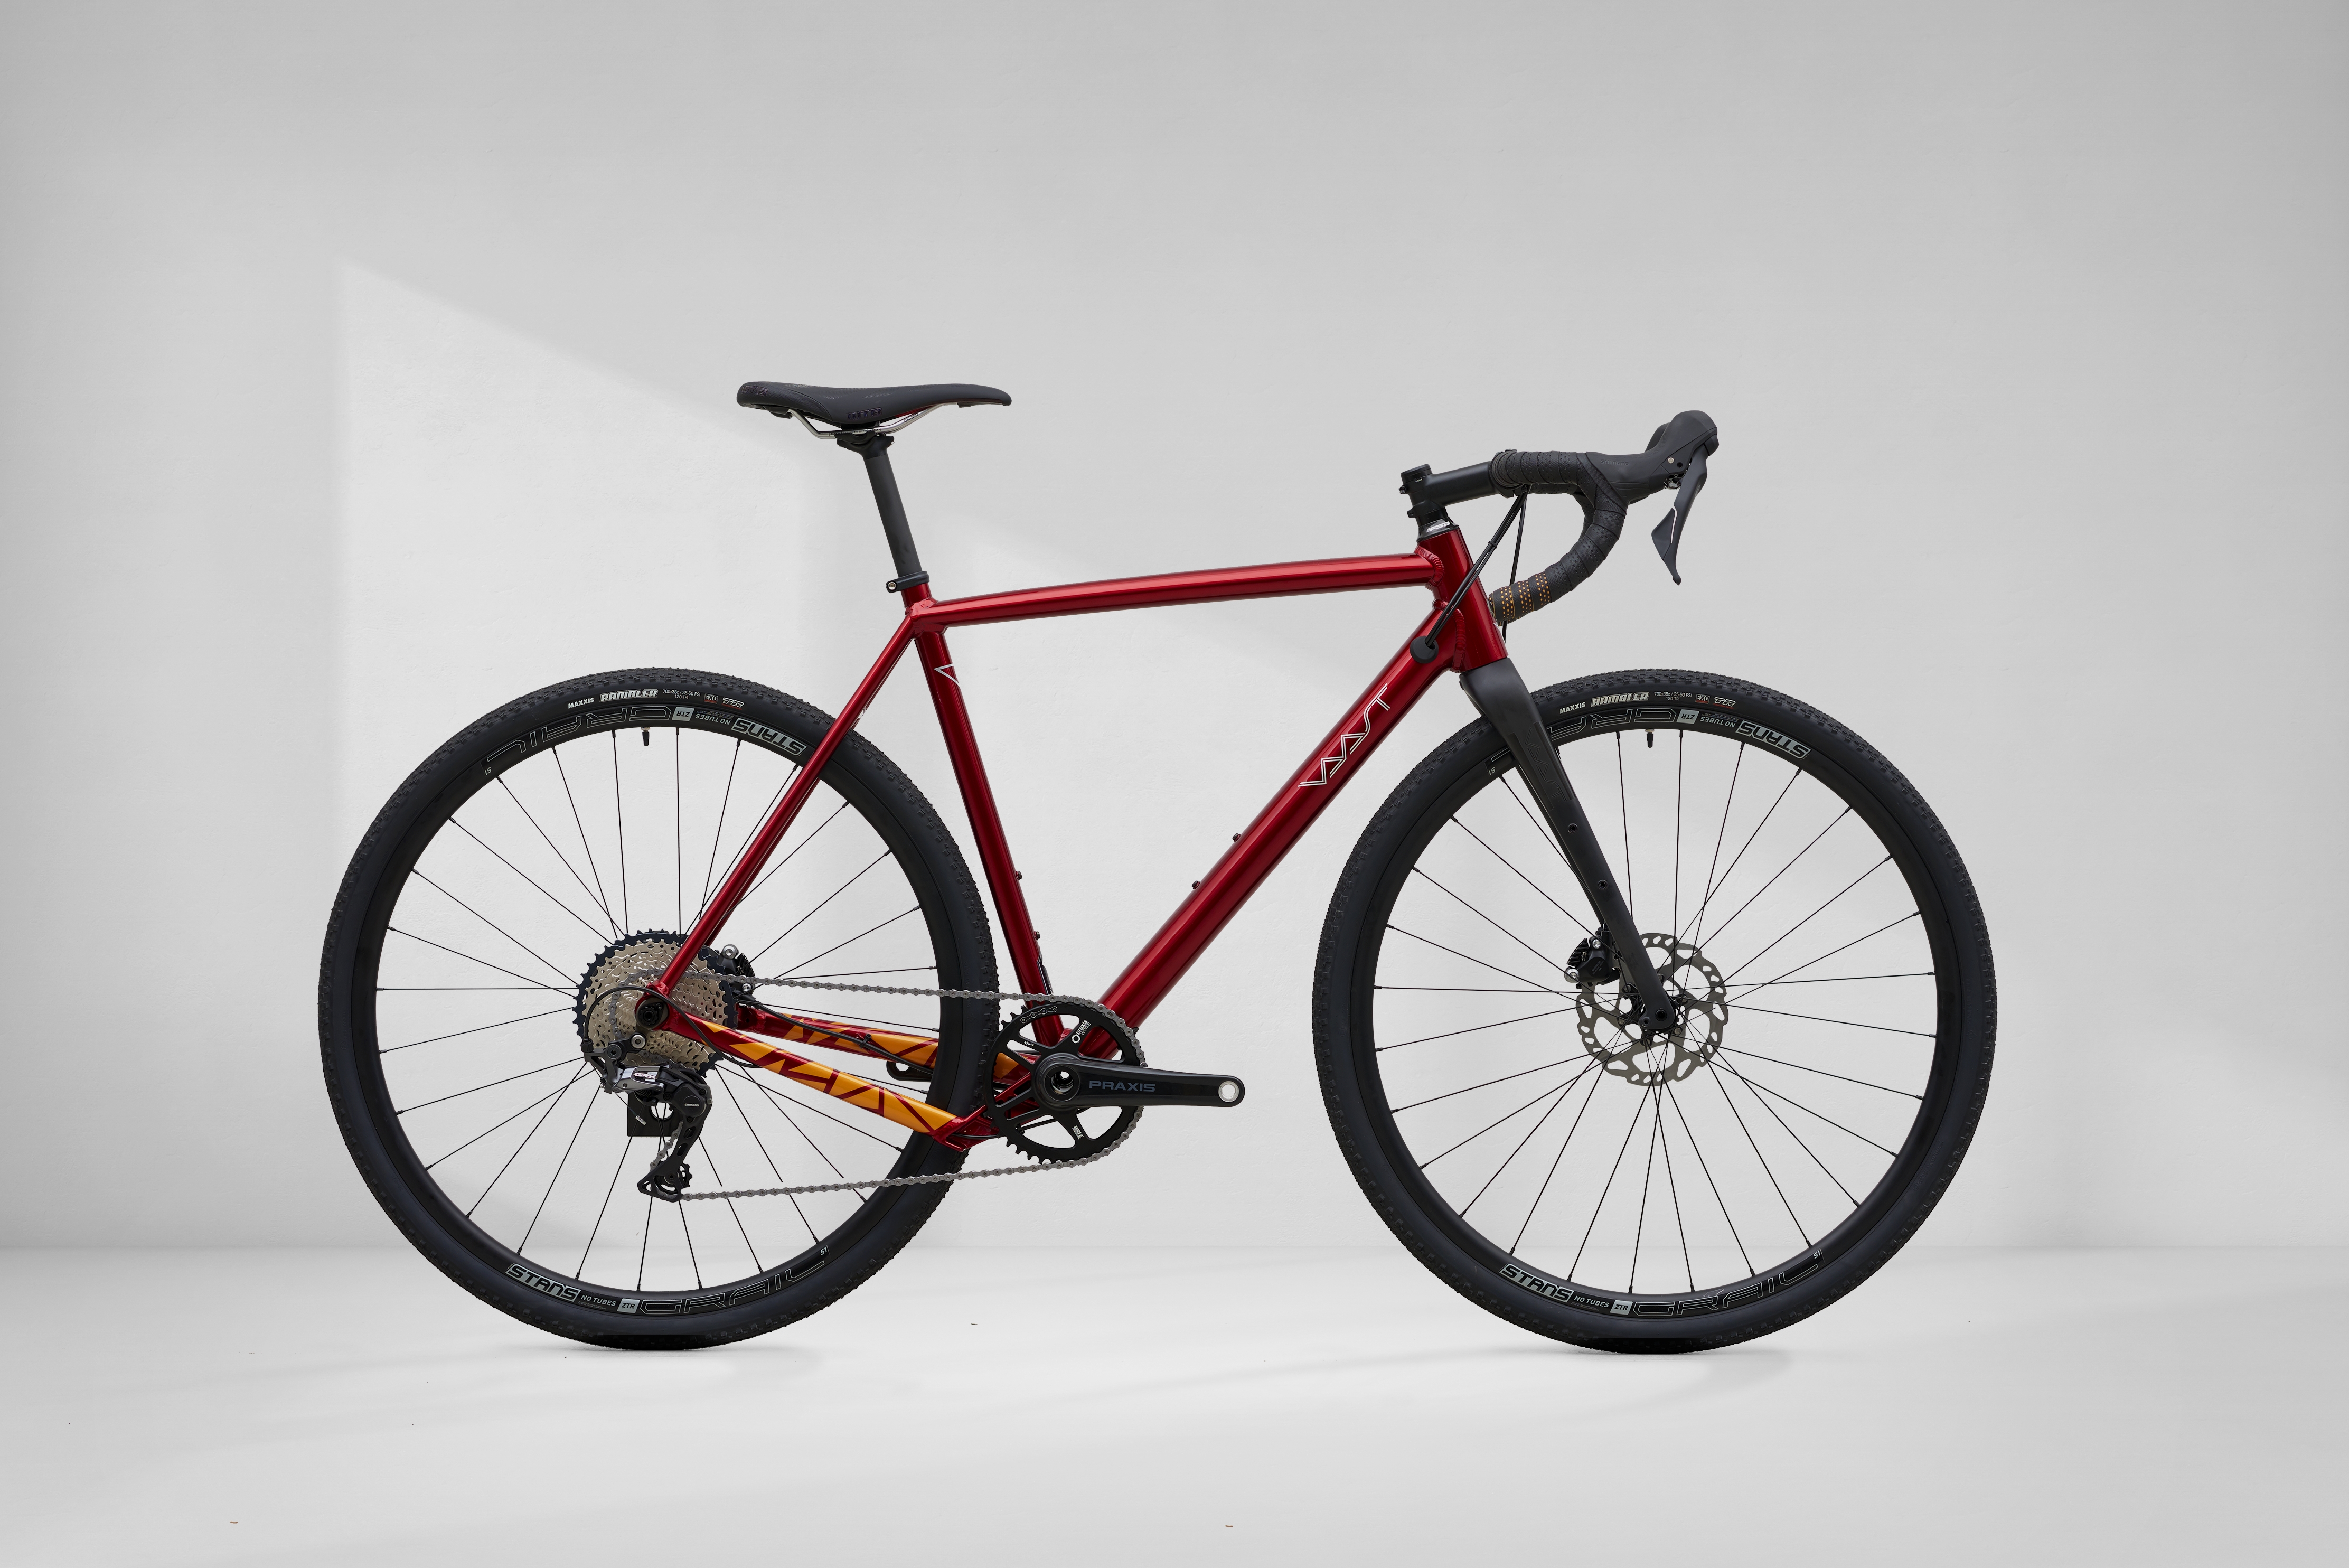 New Model Bike Images Download